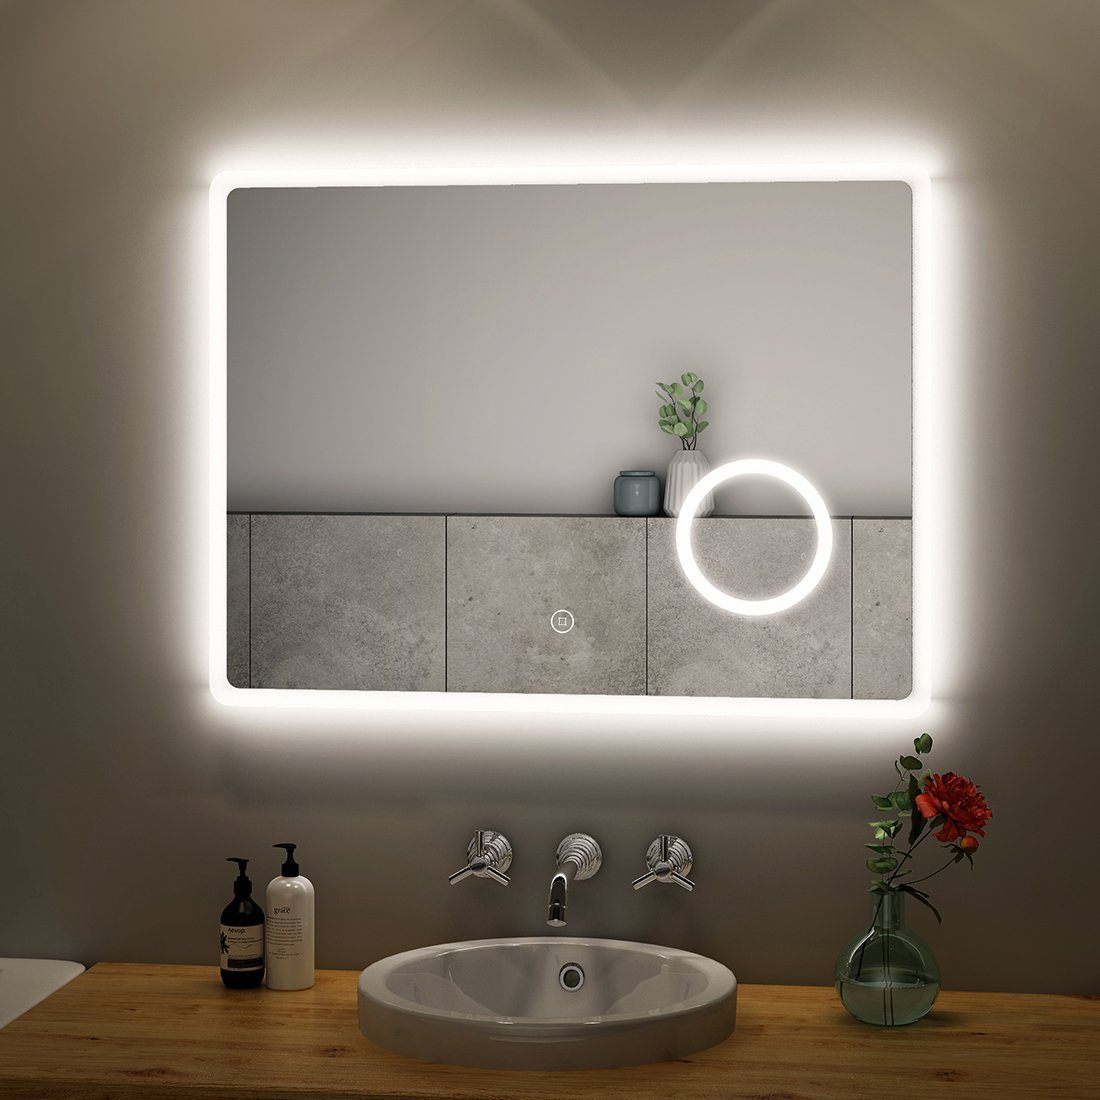 S'AFIELINA Badspiegel Led 6500K,Touchschalter,3-fach Beleuchtung 80x60cm,Kaltweiß mit 54 Vergrößerung,IP Badspiegel Wandspiegel